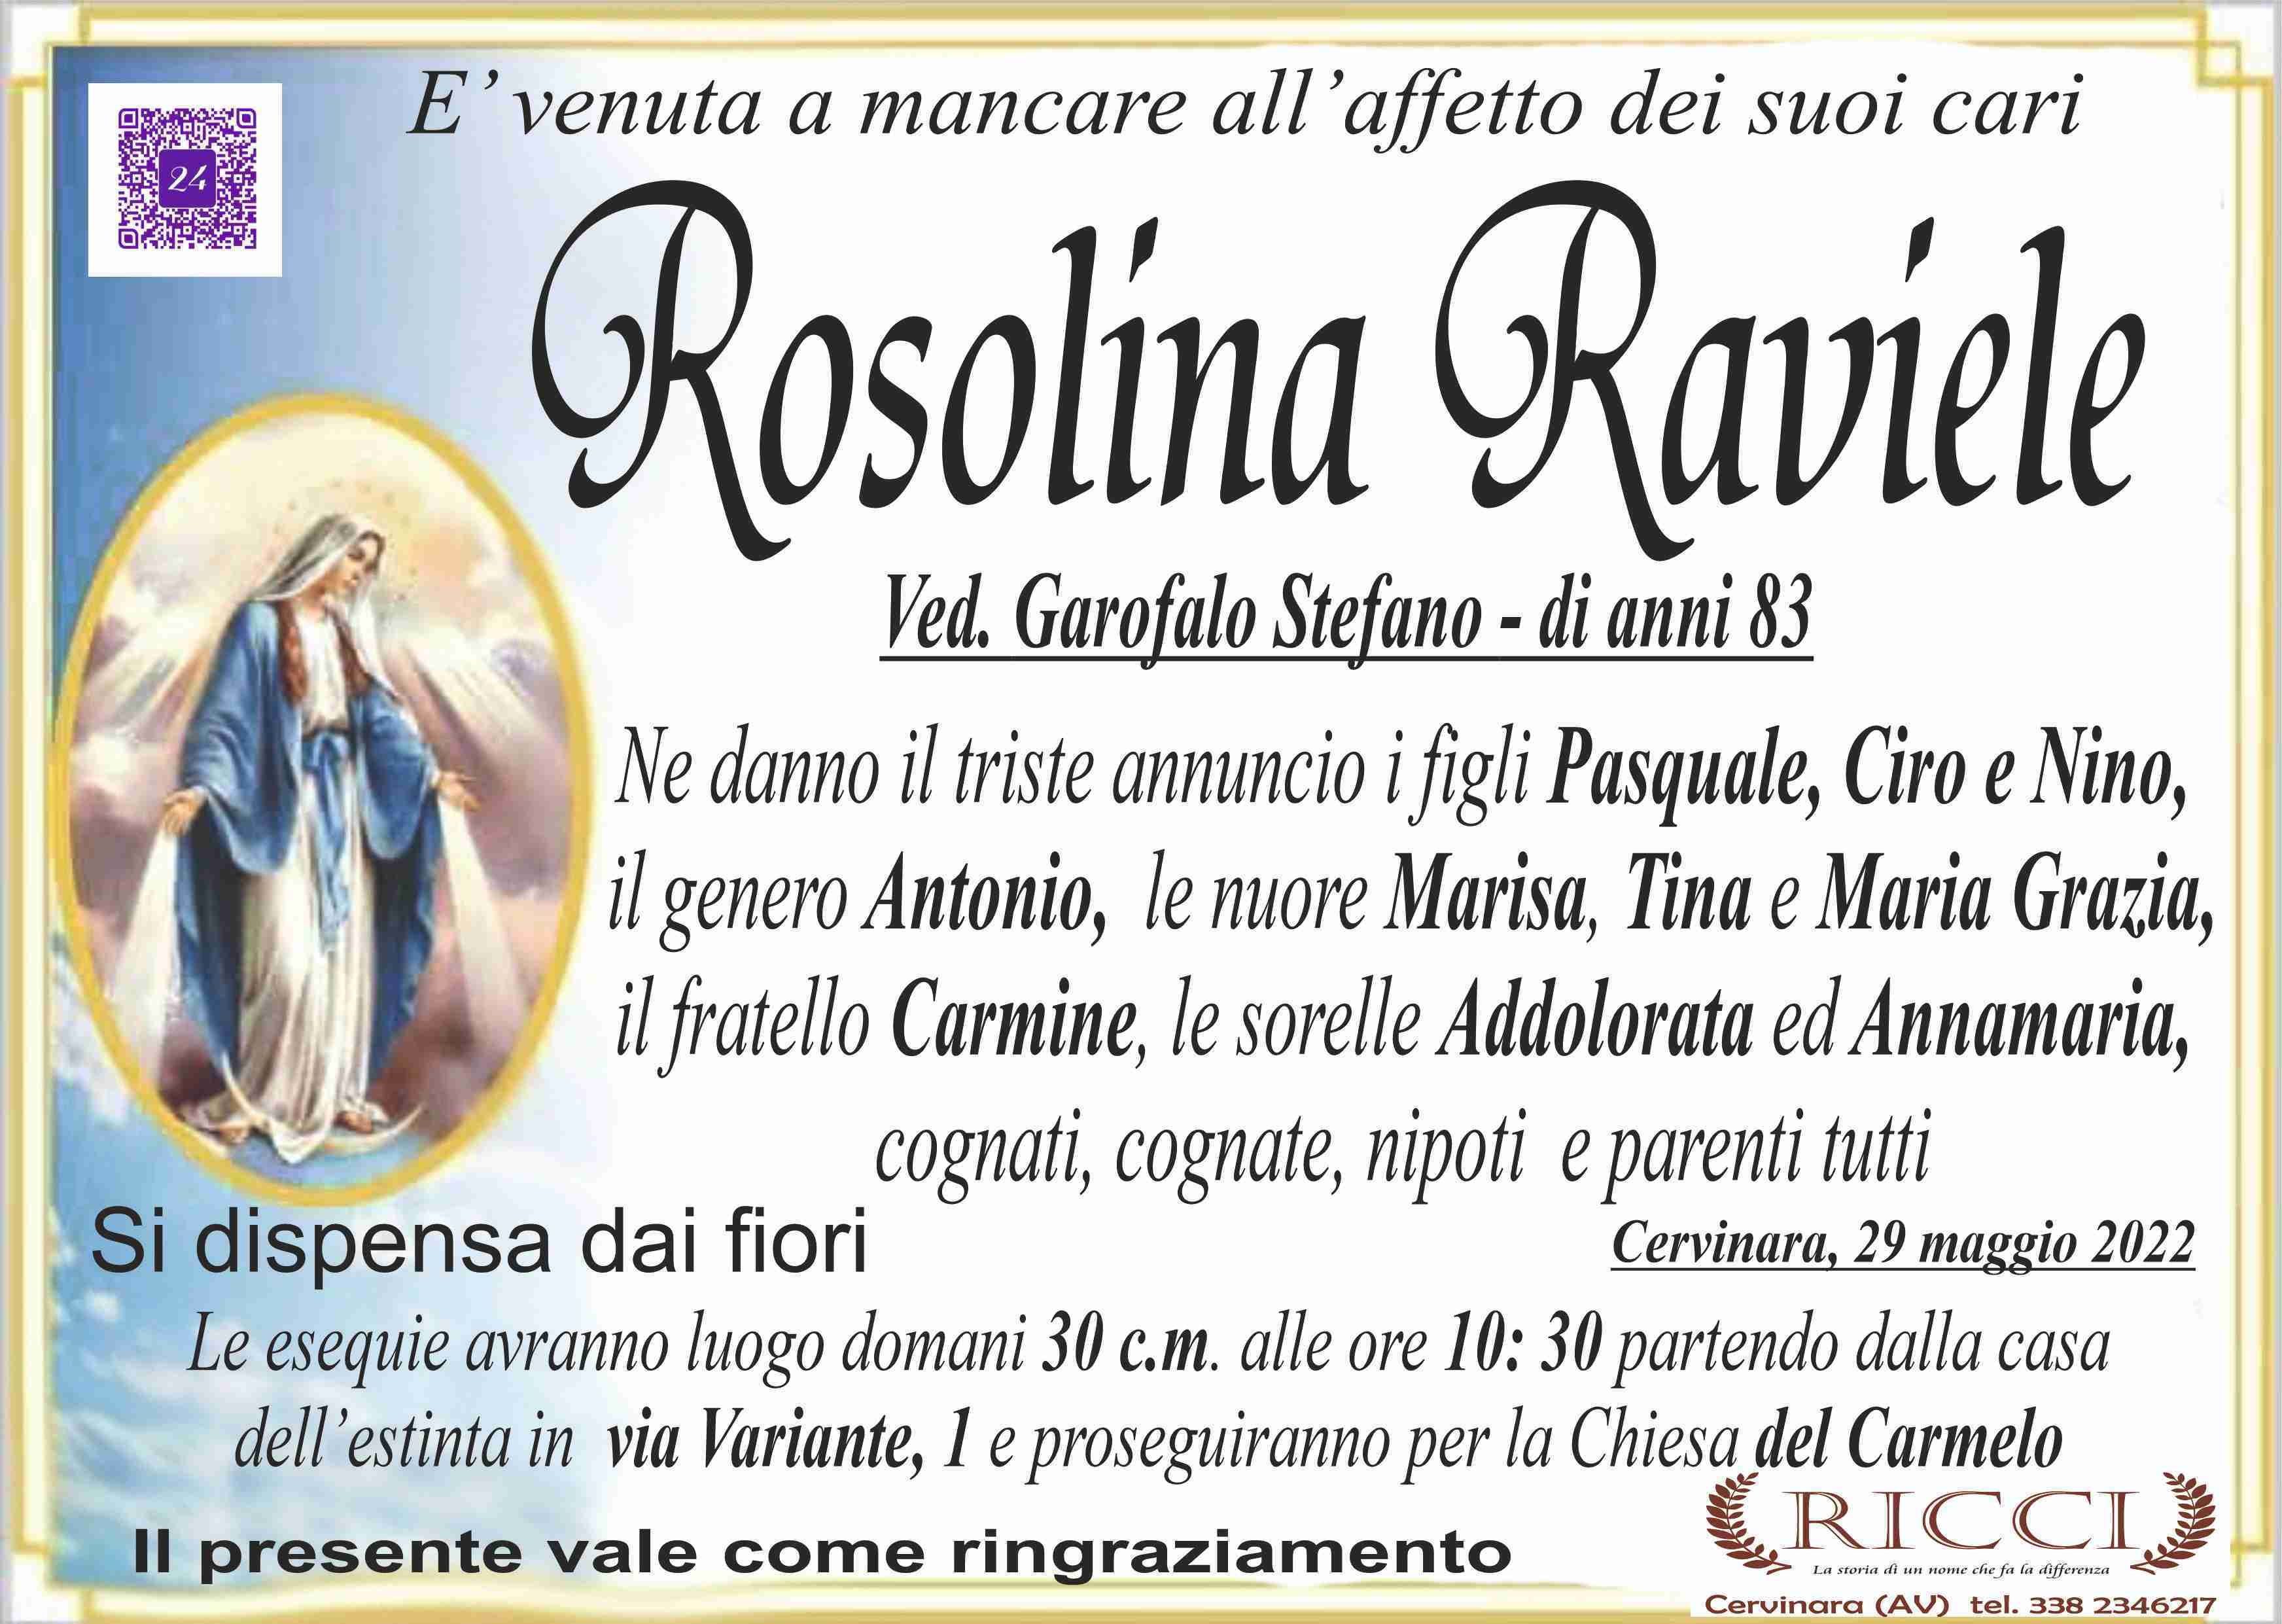 Rosolina Raviele